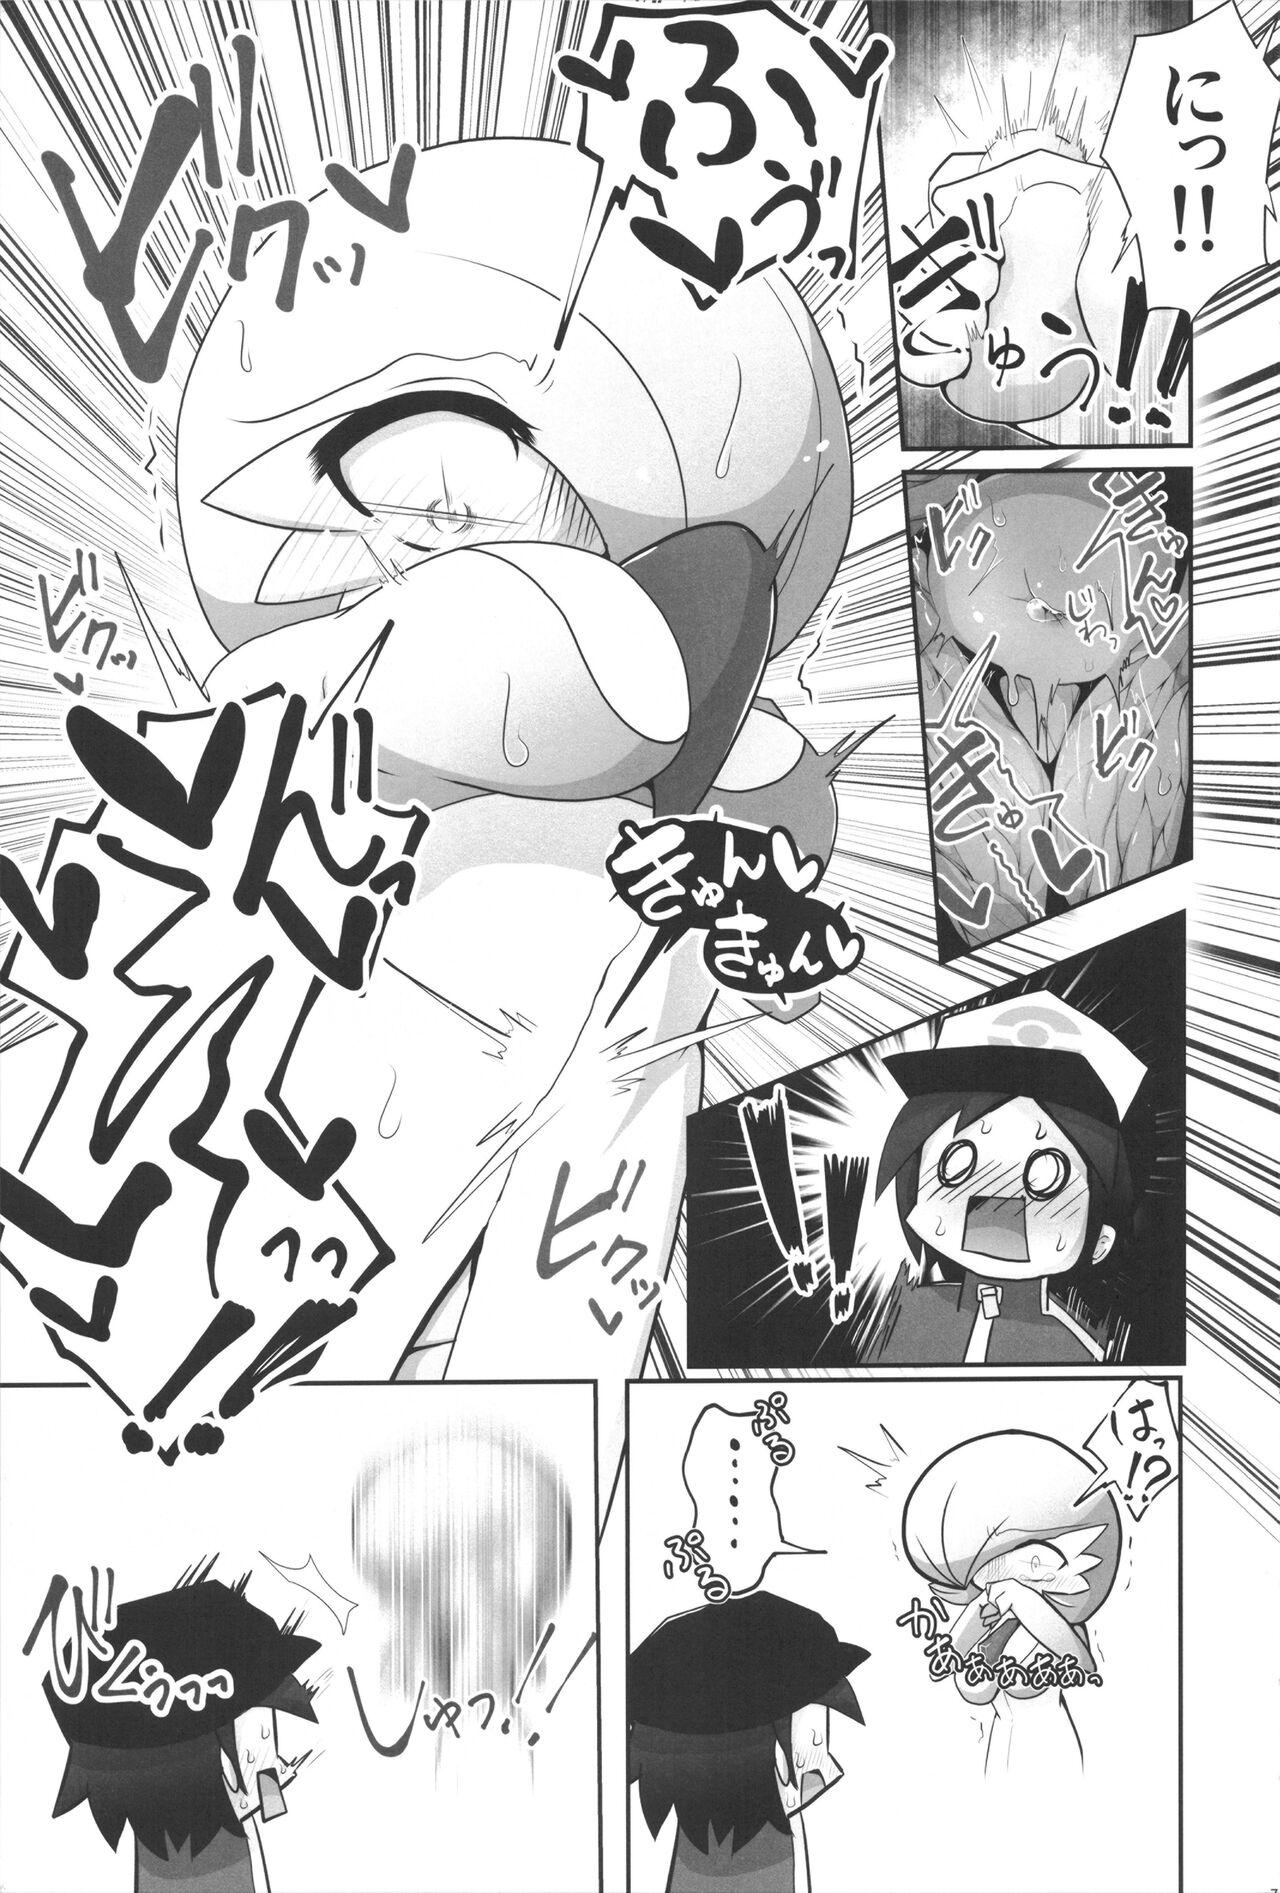 Bubblebutt Saucy Sana and Synchronization Remake Version - Pokemon | pocket monsters Nena - Page 6